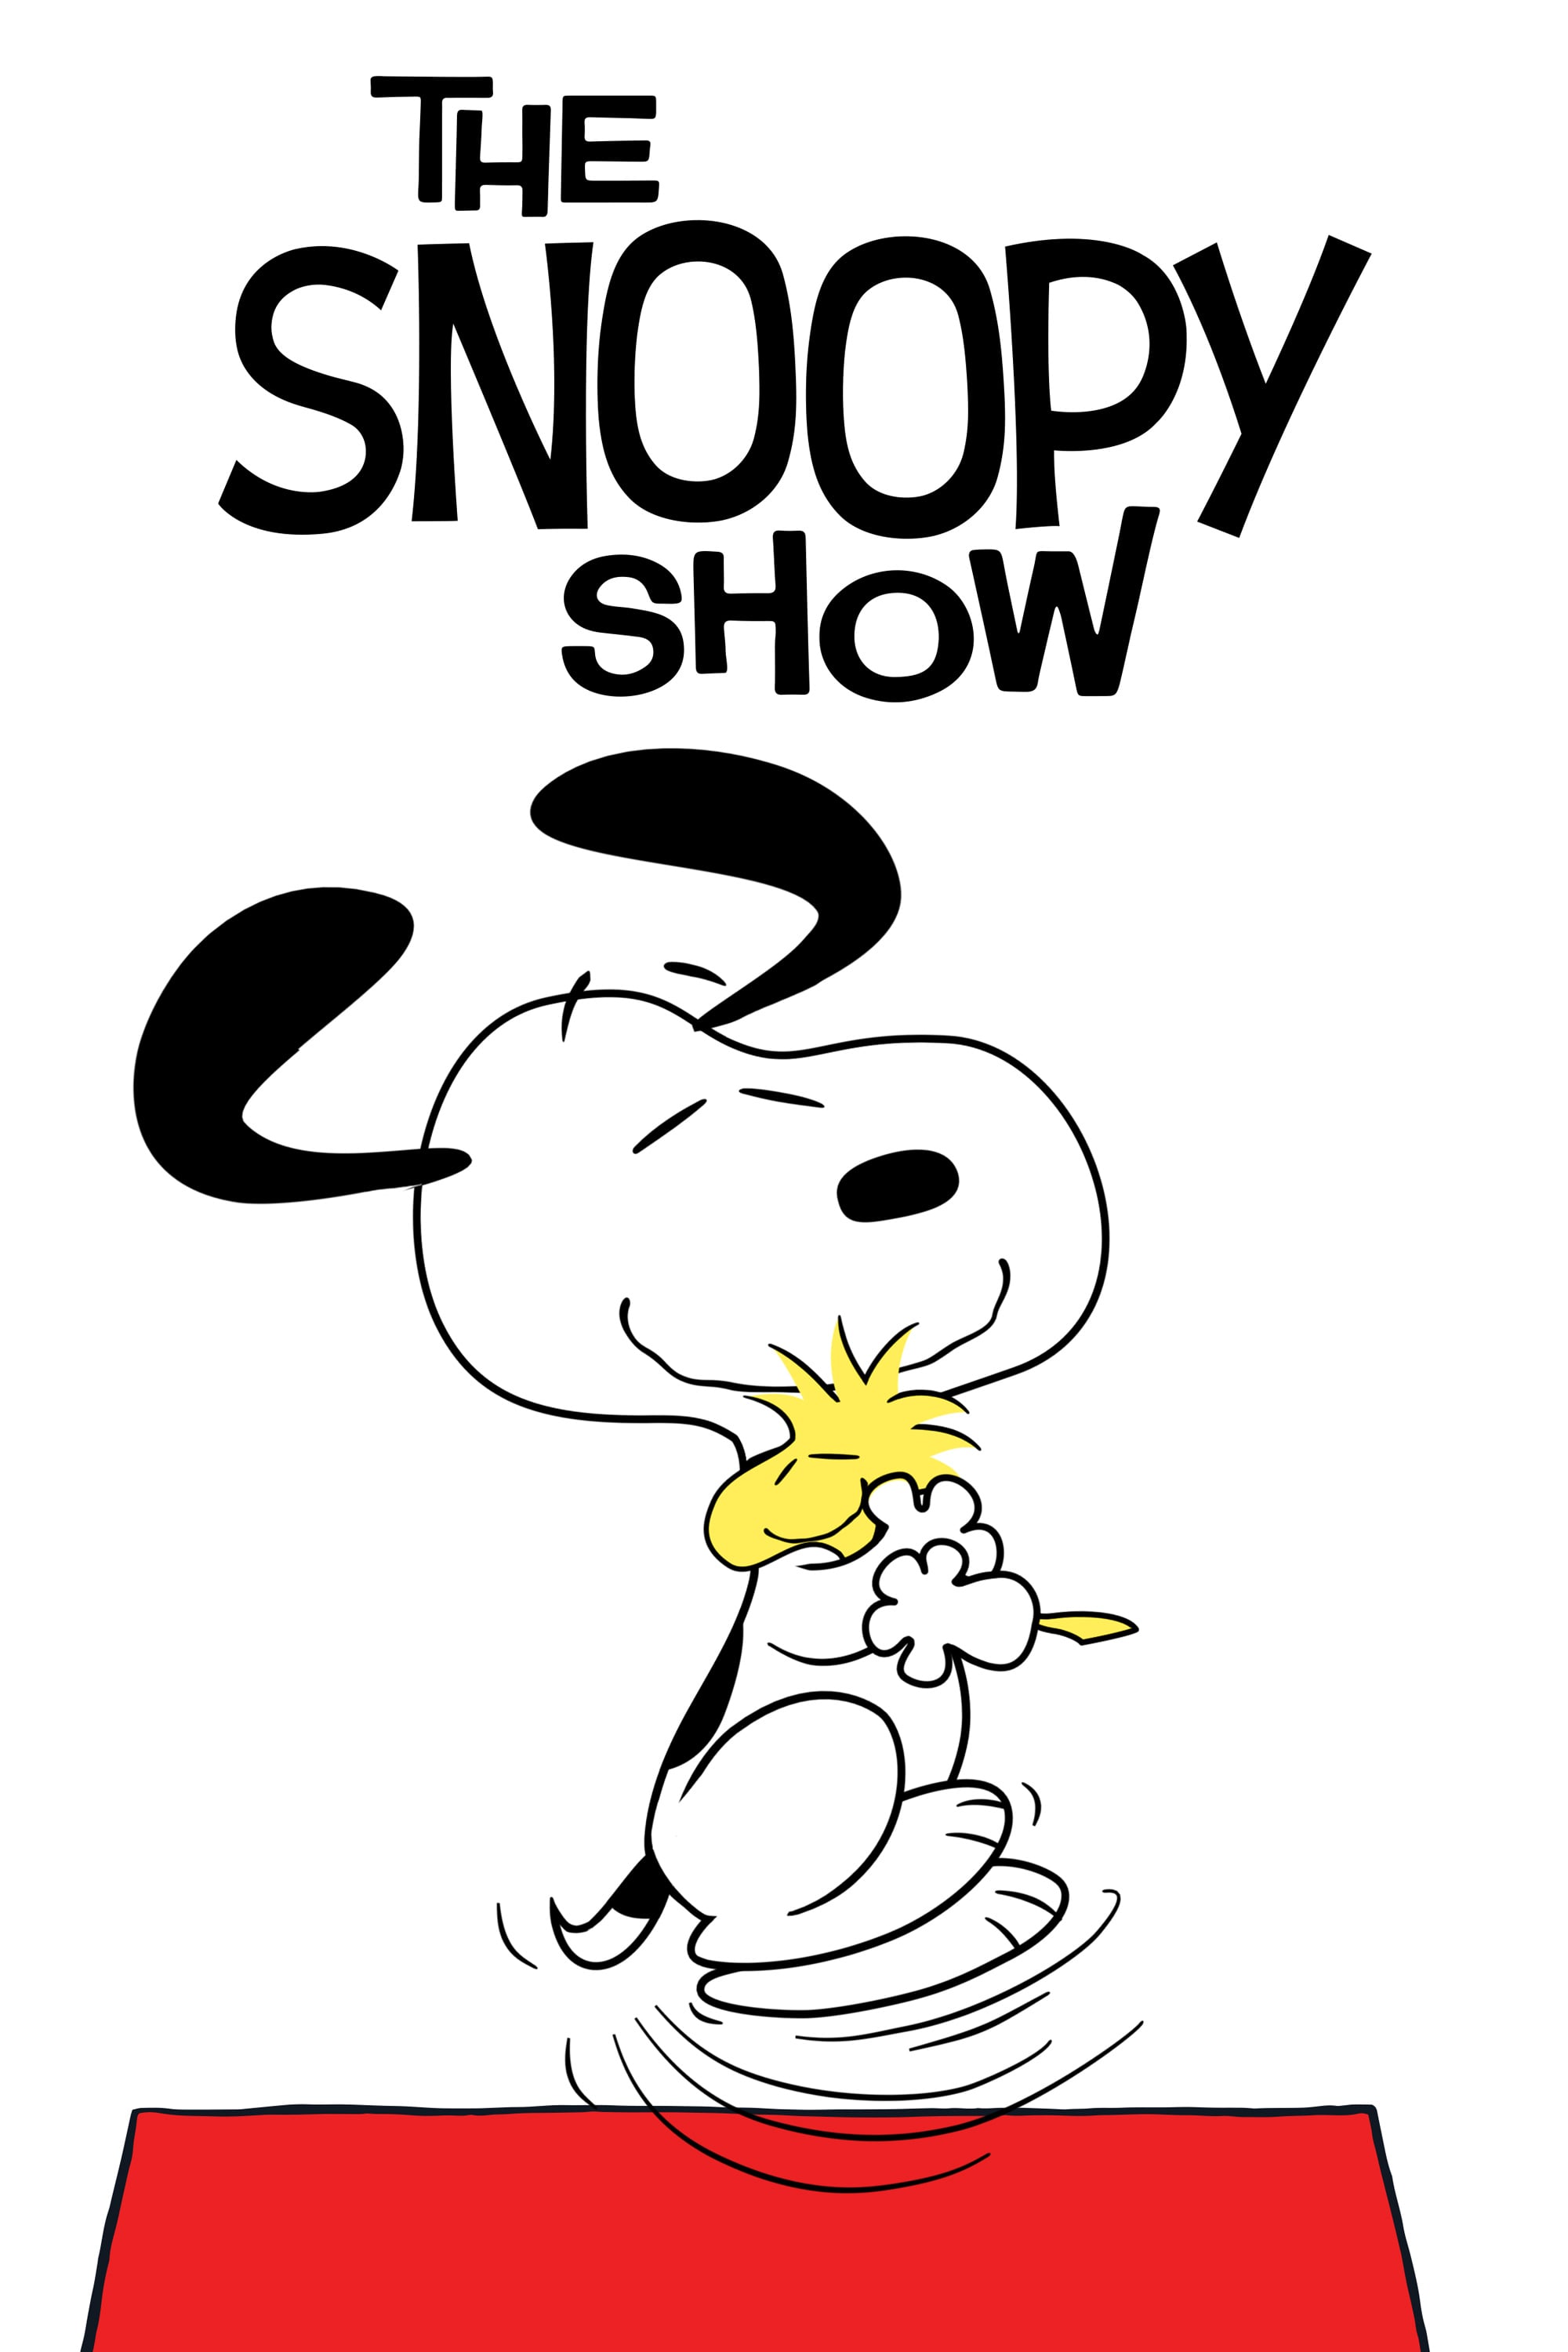 El show de Snoopy